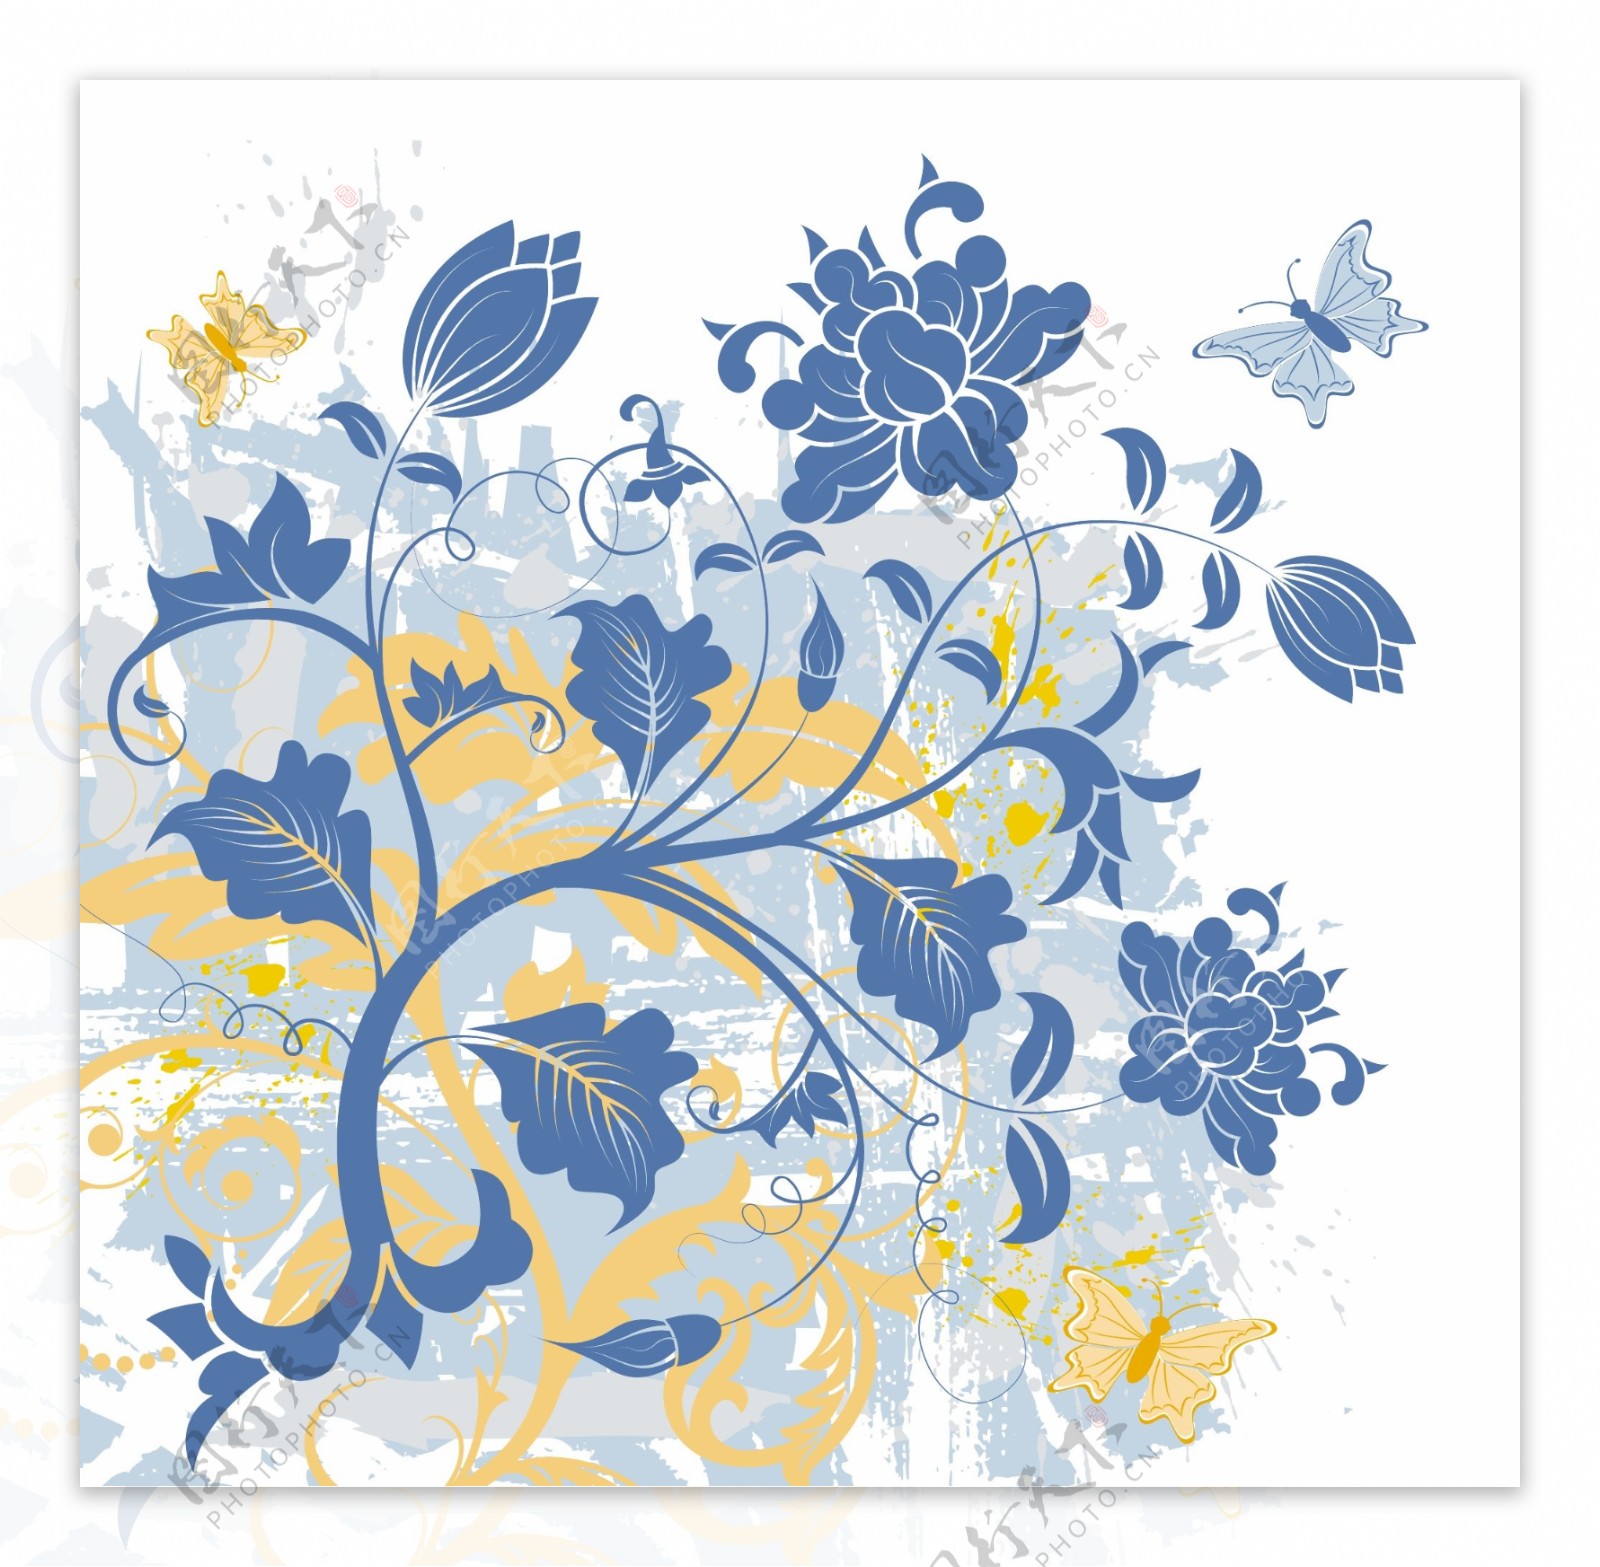 矢量蓝色花卉装饰背景素材